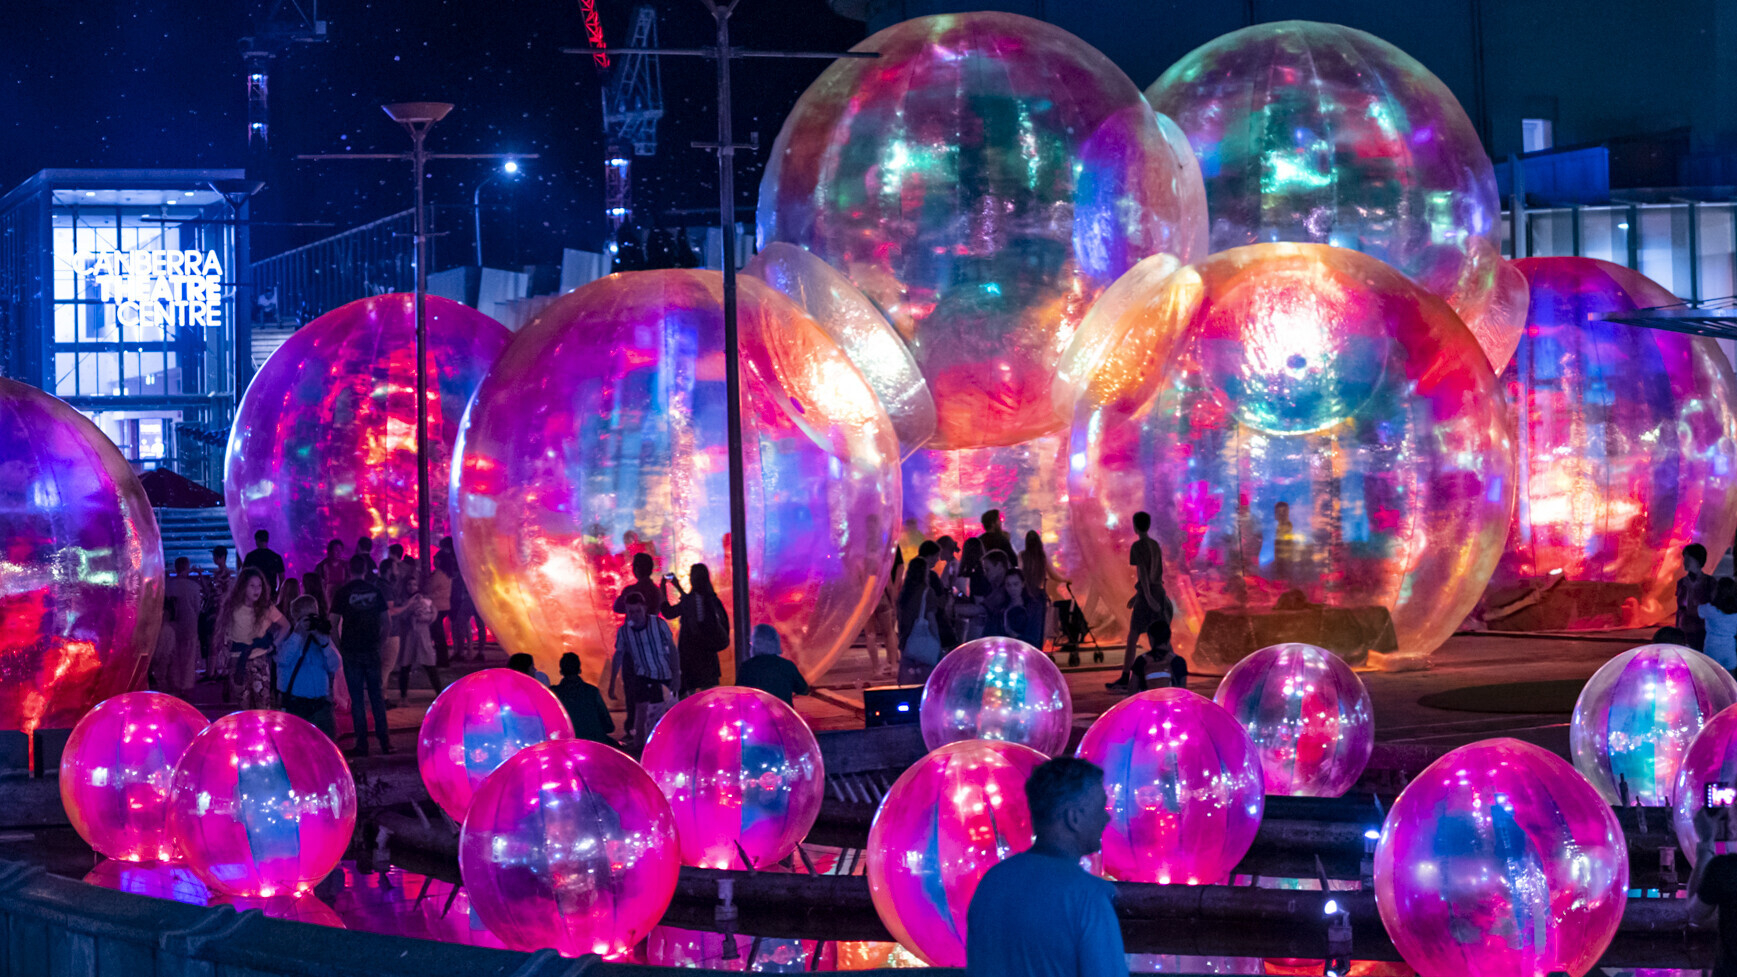 People walking among large illuminated translucent spheres at night